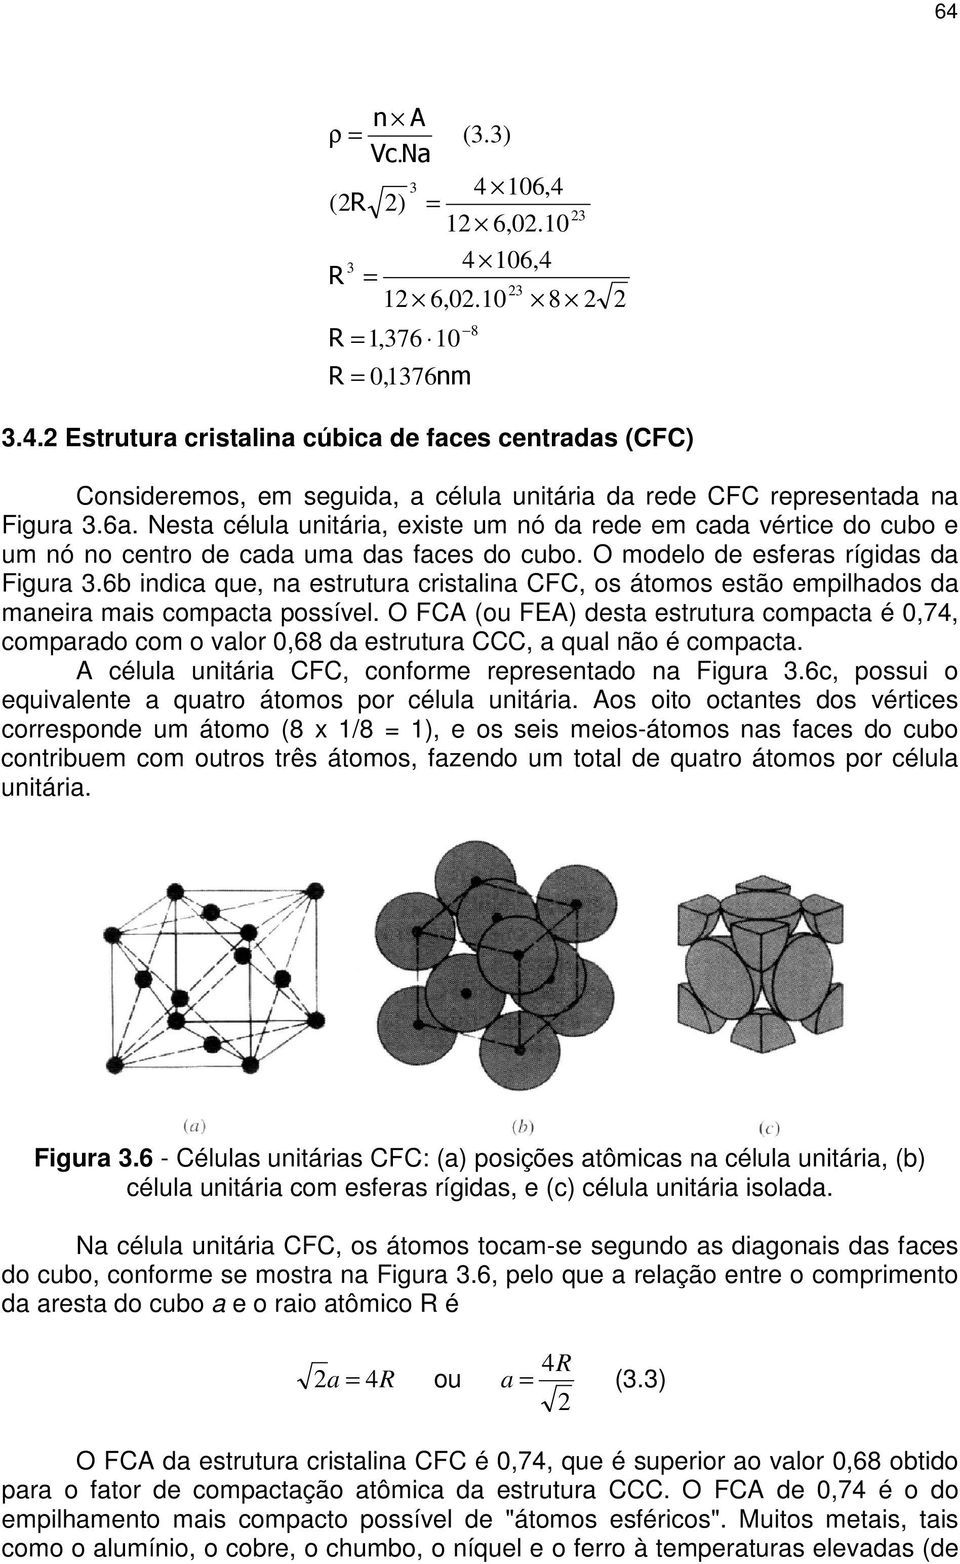 6b indica que, na estrutura cristalina CFC, os átomos estão empilhados da maneira mais compacta possível.